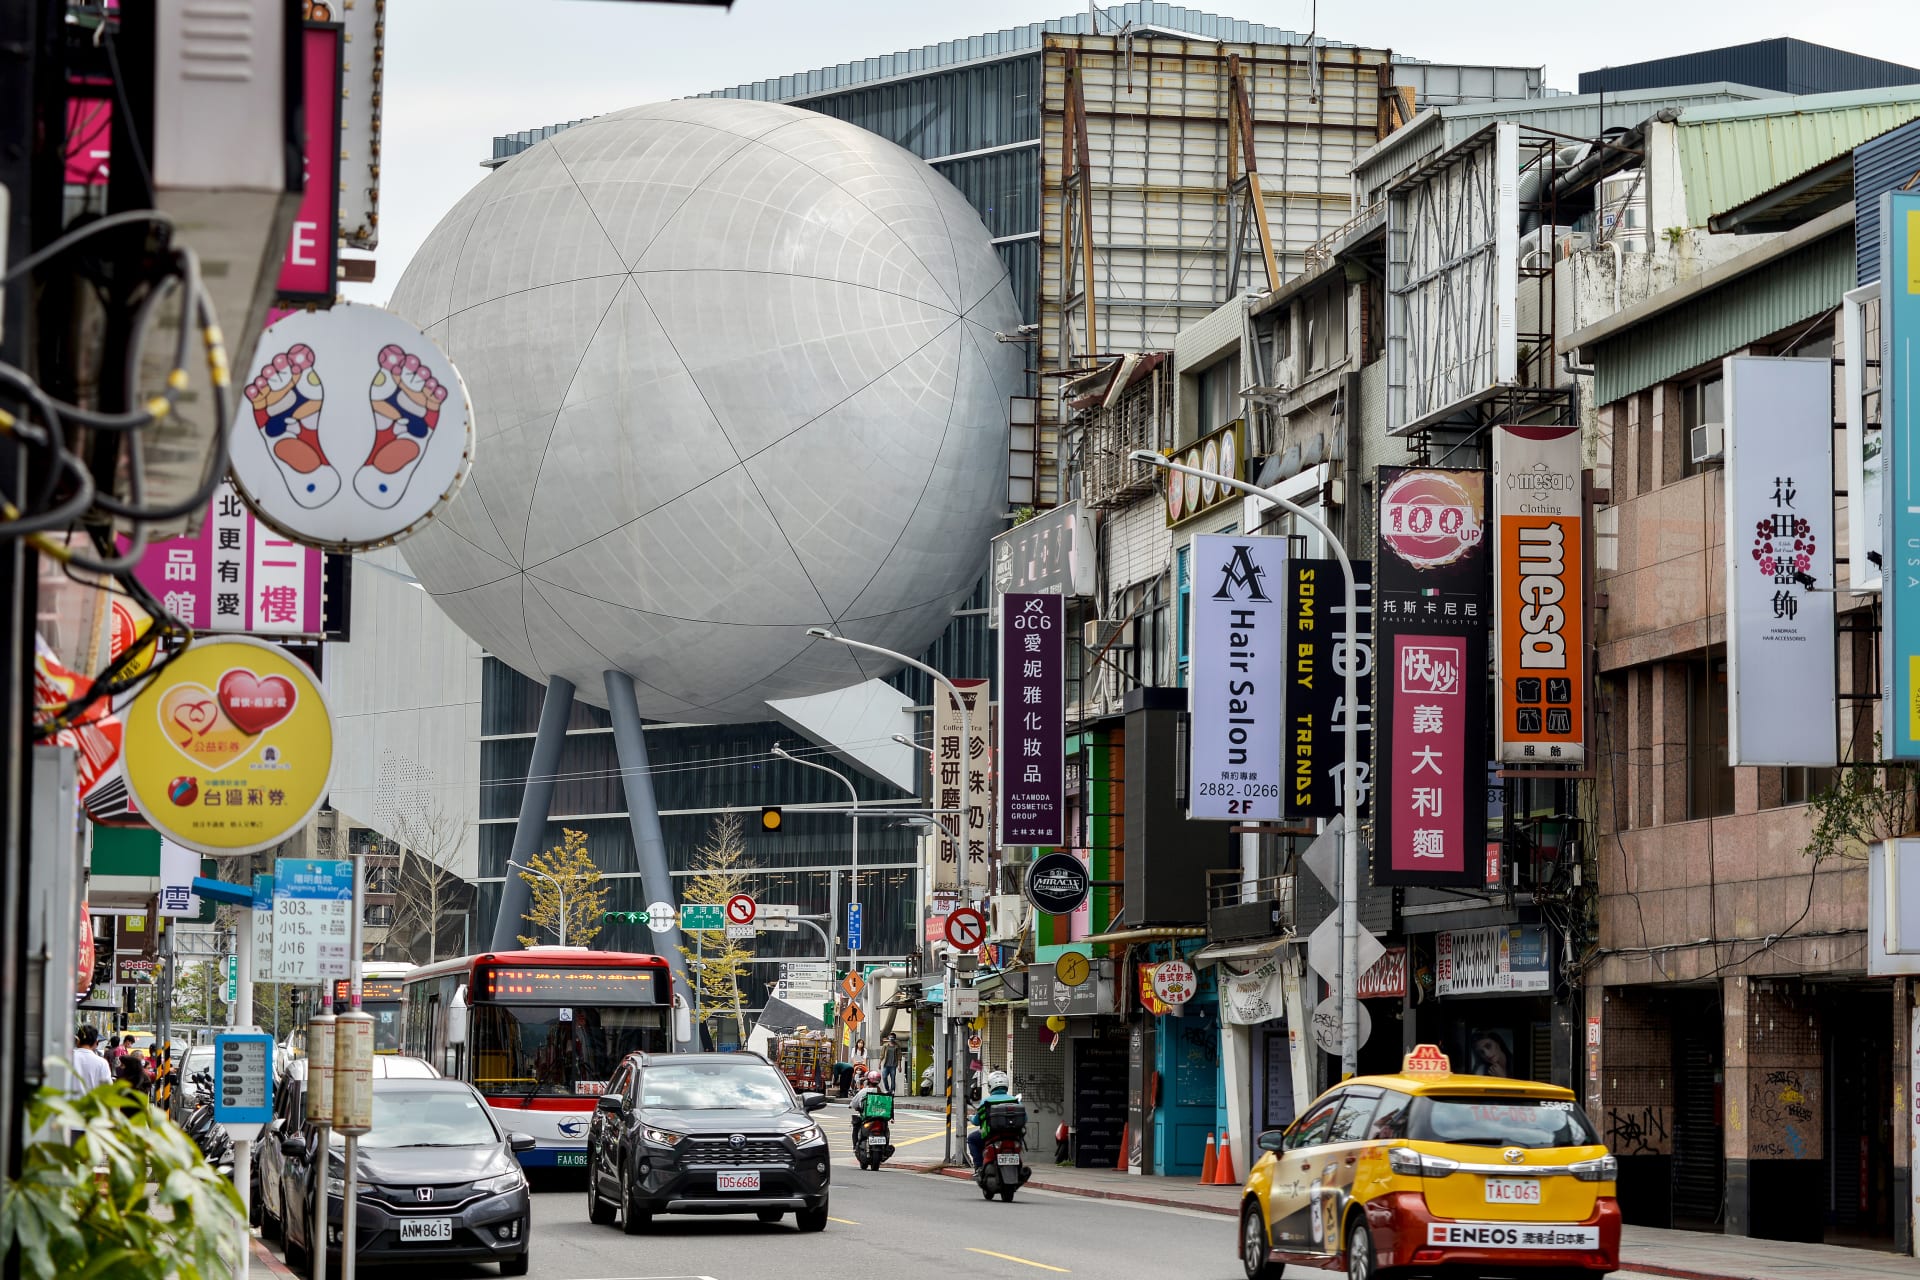 بكلفة خيالية بلغت 220 مليون دولار..  كيف أعاد مركز الفنون الجديد في تايوان النظر في تصميم المسارح بشكلٍ جذري؟